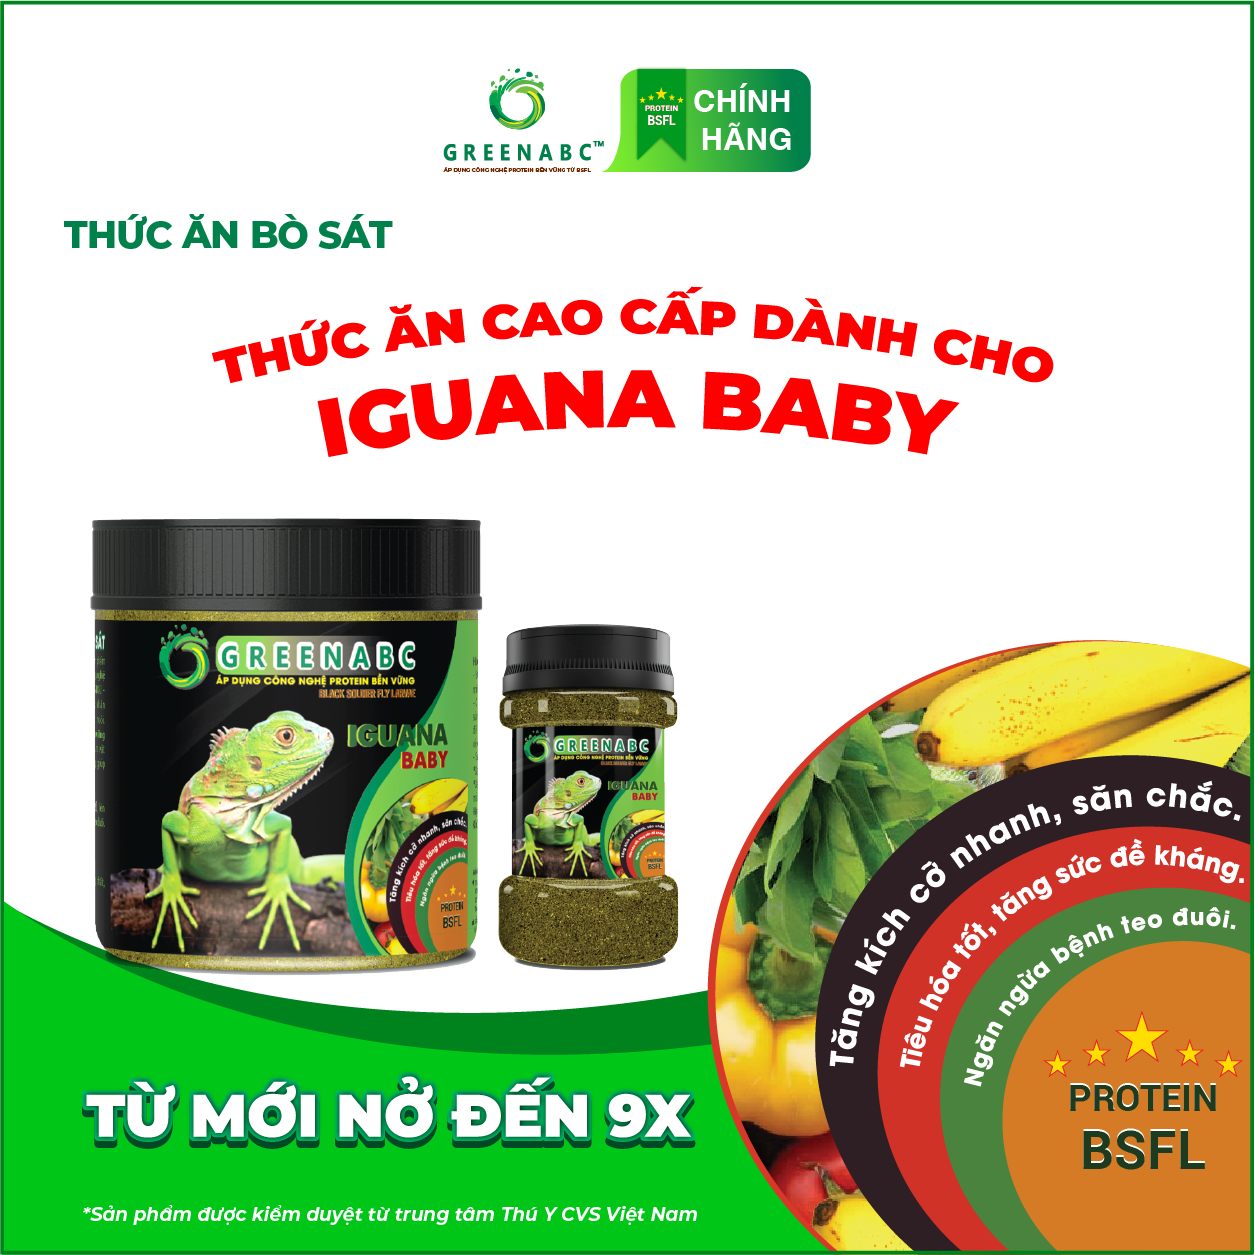 Thức ăn bò sát Iguana Baby - GREENABC dùng cho Rồng Nam Mỹ từ mới nở cho đến 9x giúp tăng kích thước, lên màu đẹp, phòng chống MBD, teo đuôi – Hộp 230g